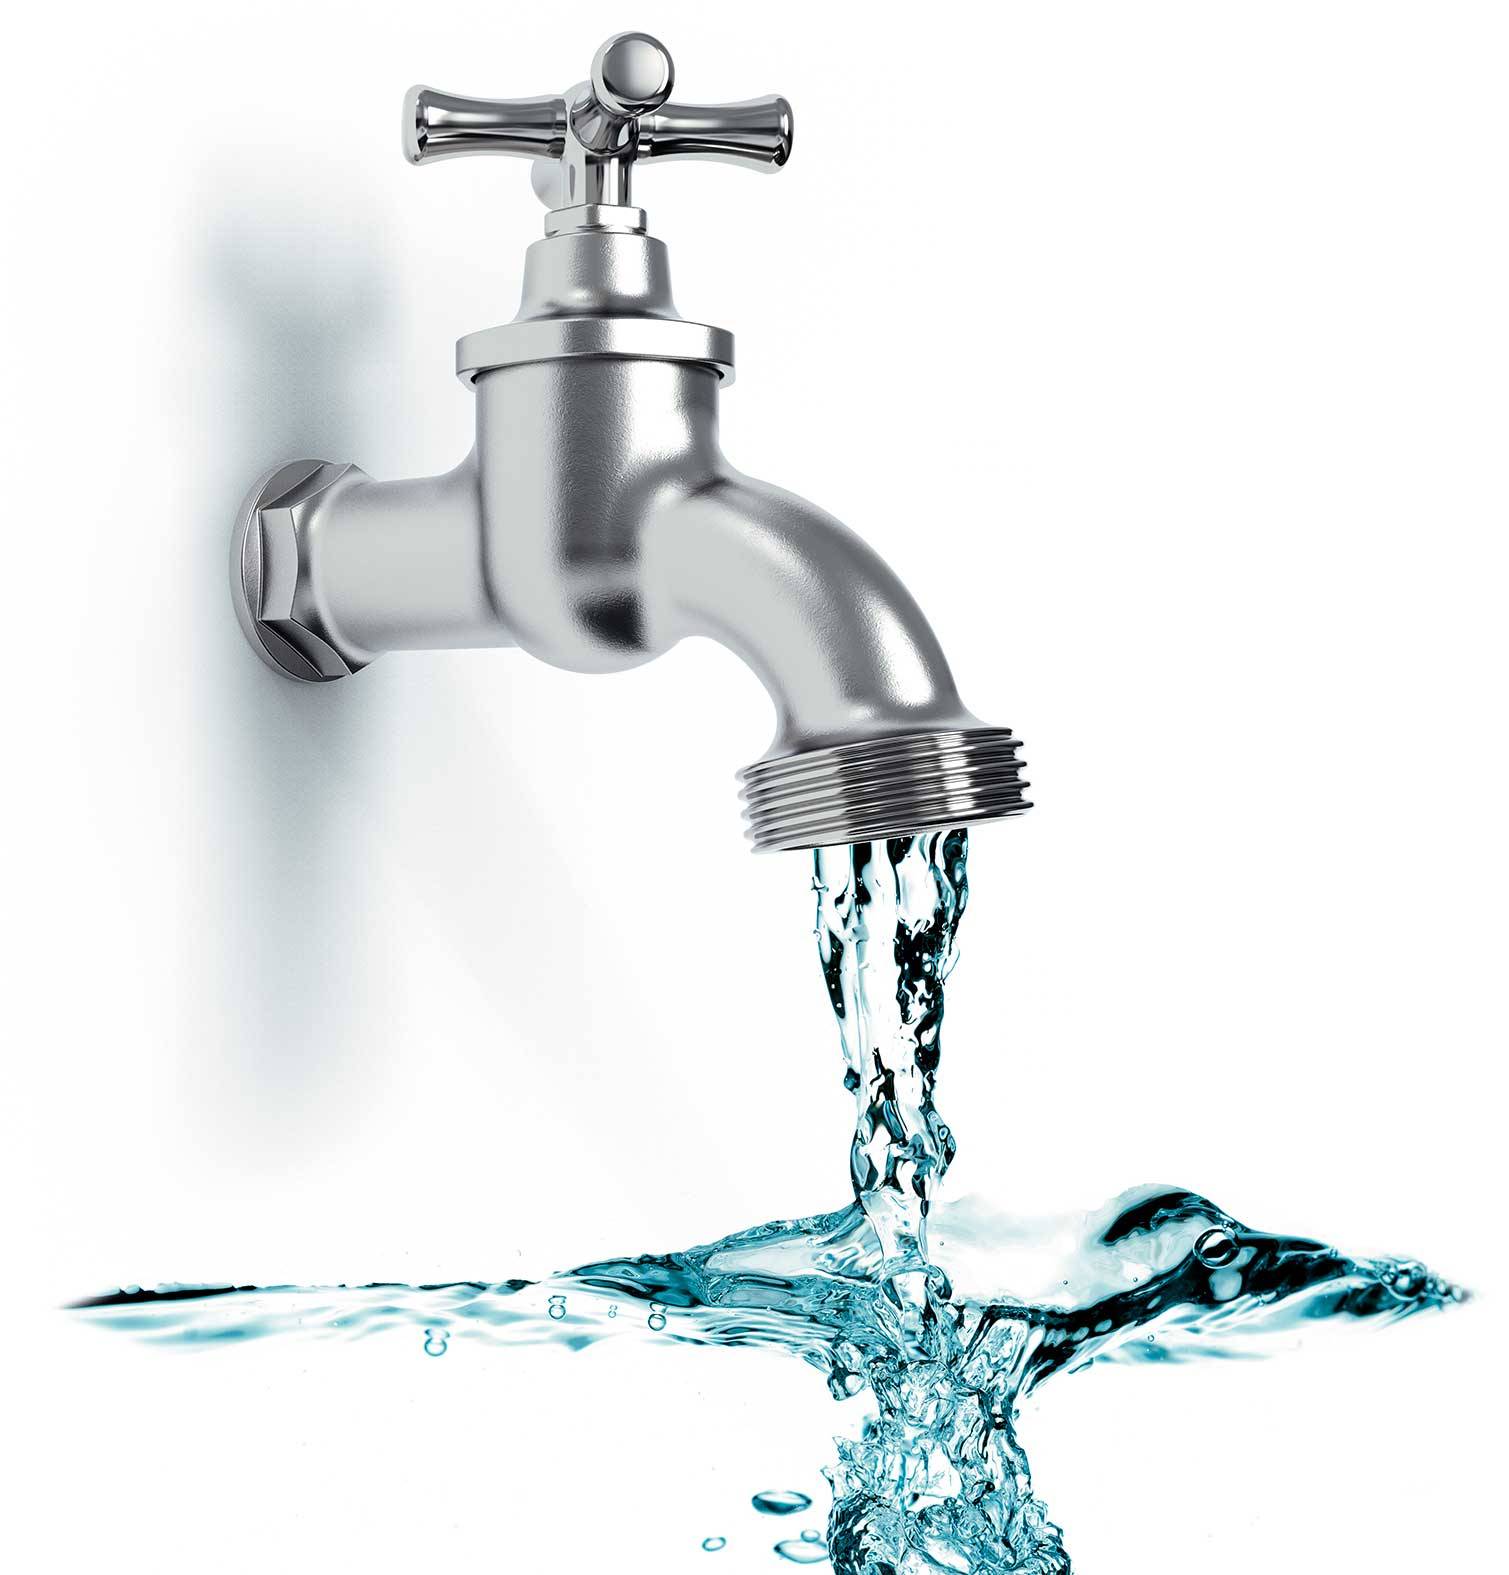 reducir-consumo-agua. Reduce el consumo de agua